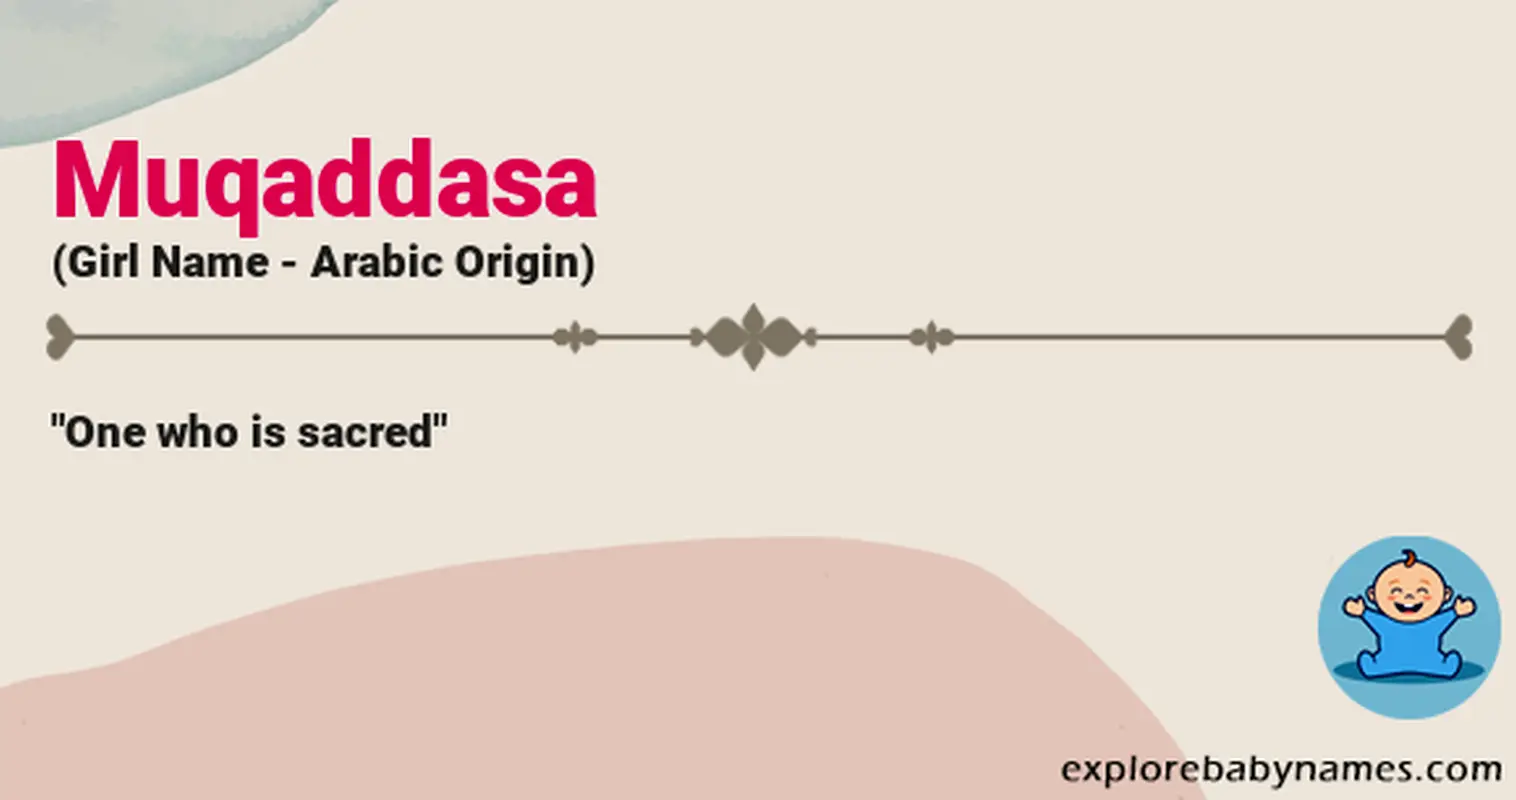 Meaning of Muqaddasa